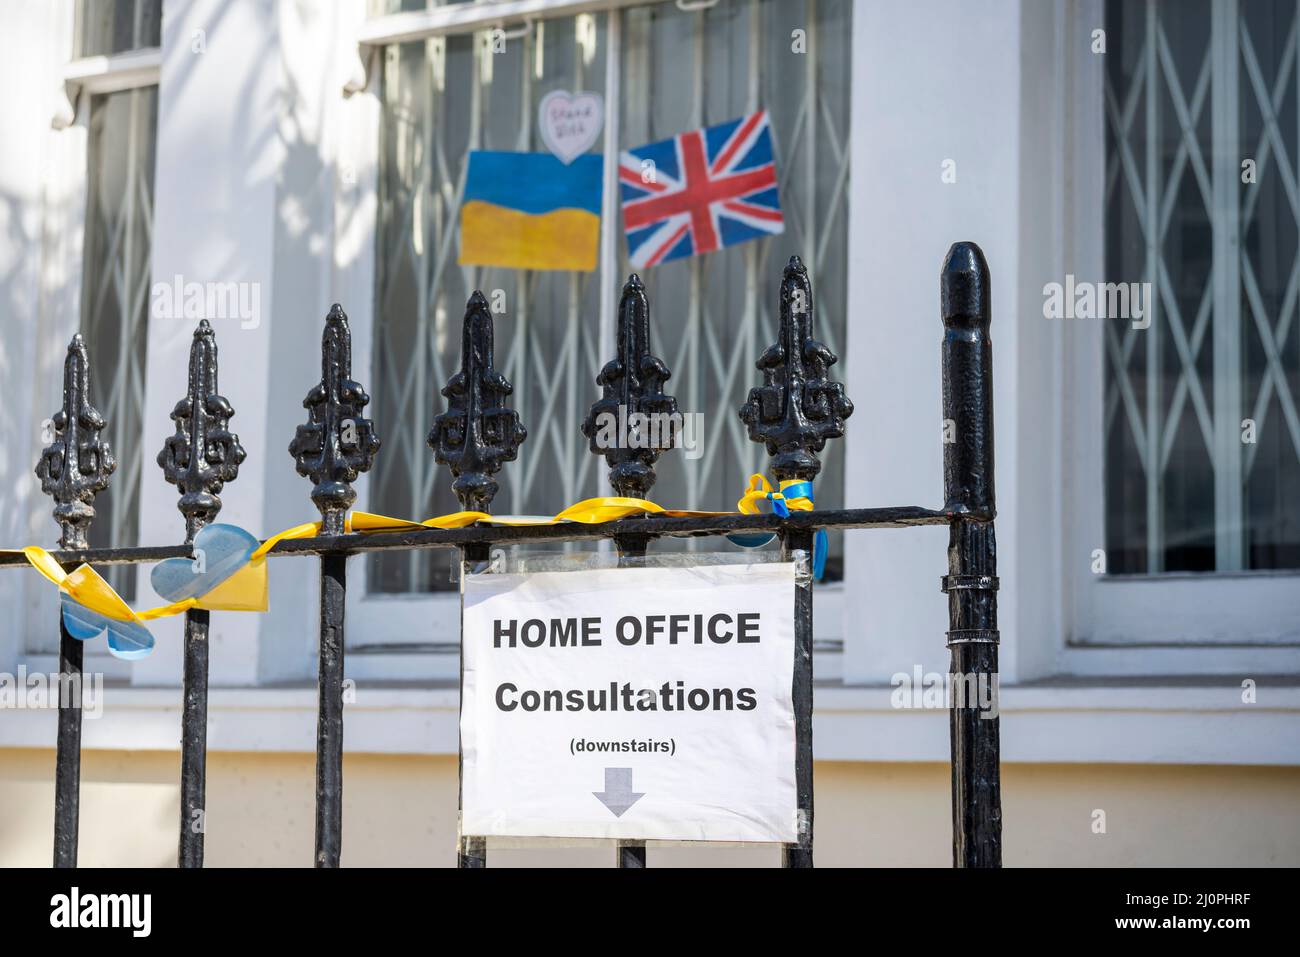 Consulat d'Ukraine, bureau de l'ambassade d'Ukraine, à Kensington Park Road, Londres, Royaume-Uni. Panneau de consultation du bureau à domicile Banque D'Images